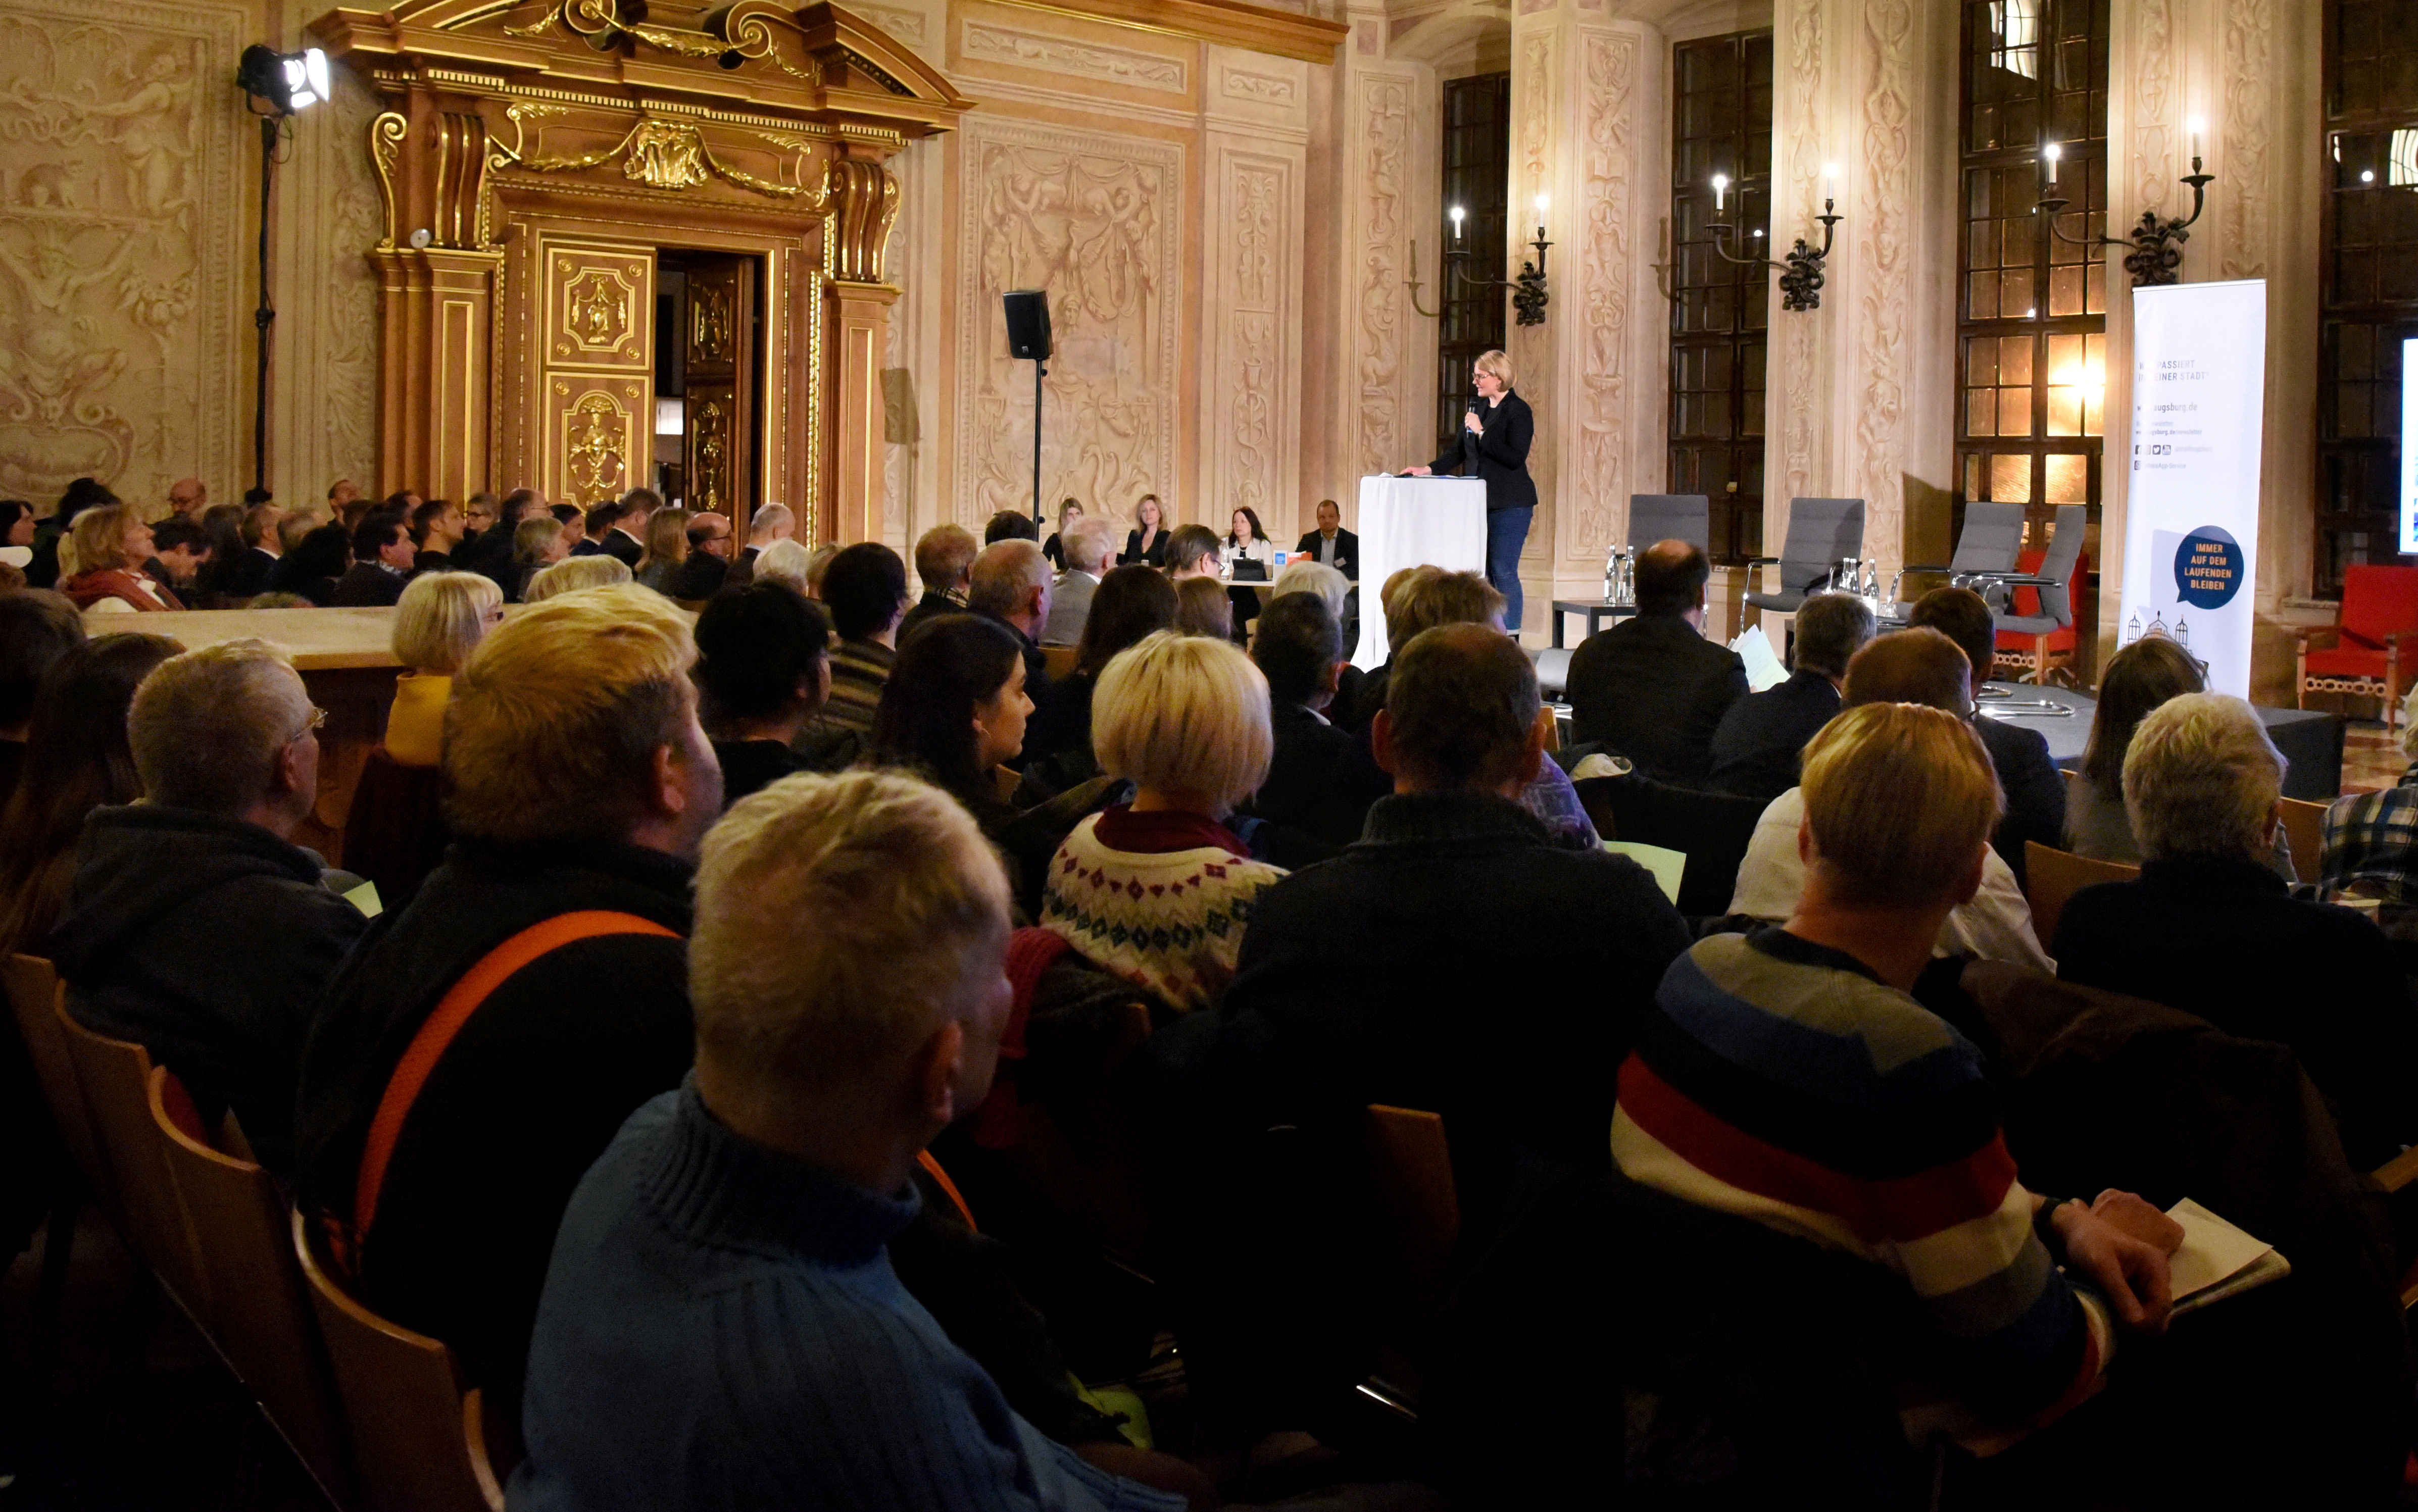  Bürgerversammlung 2019 im Goldenen Saal. Foto: Ruth Plössel/Stadt Augsburg